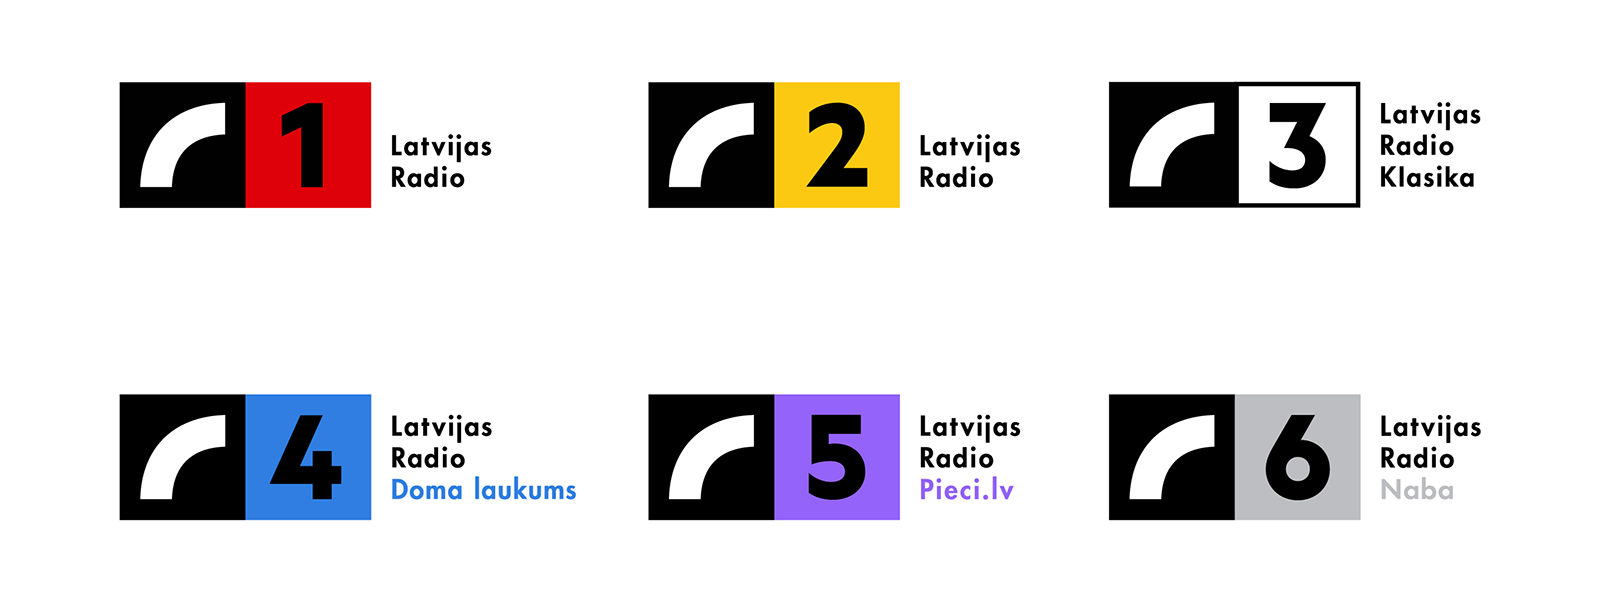 Asketic-Latvijas-Radio-01 ← FOLD